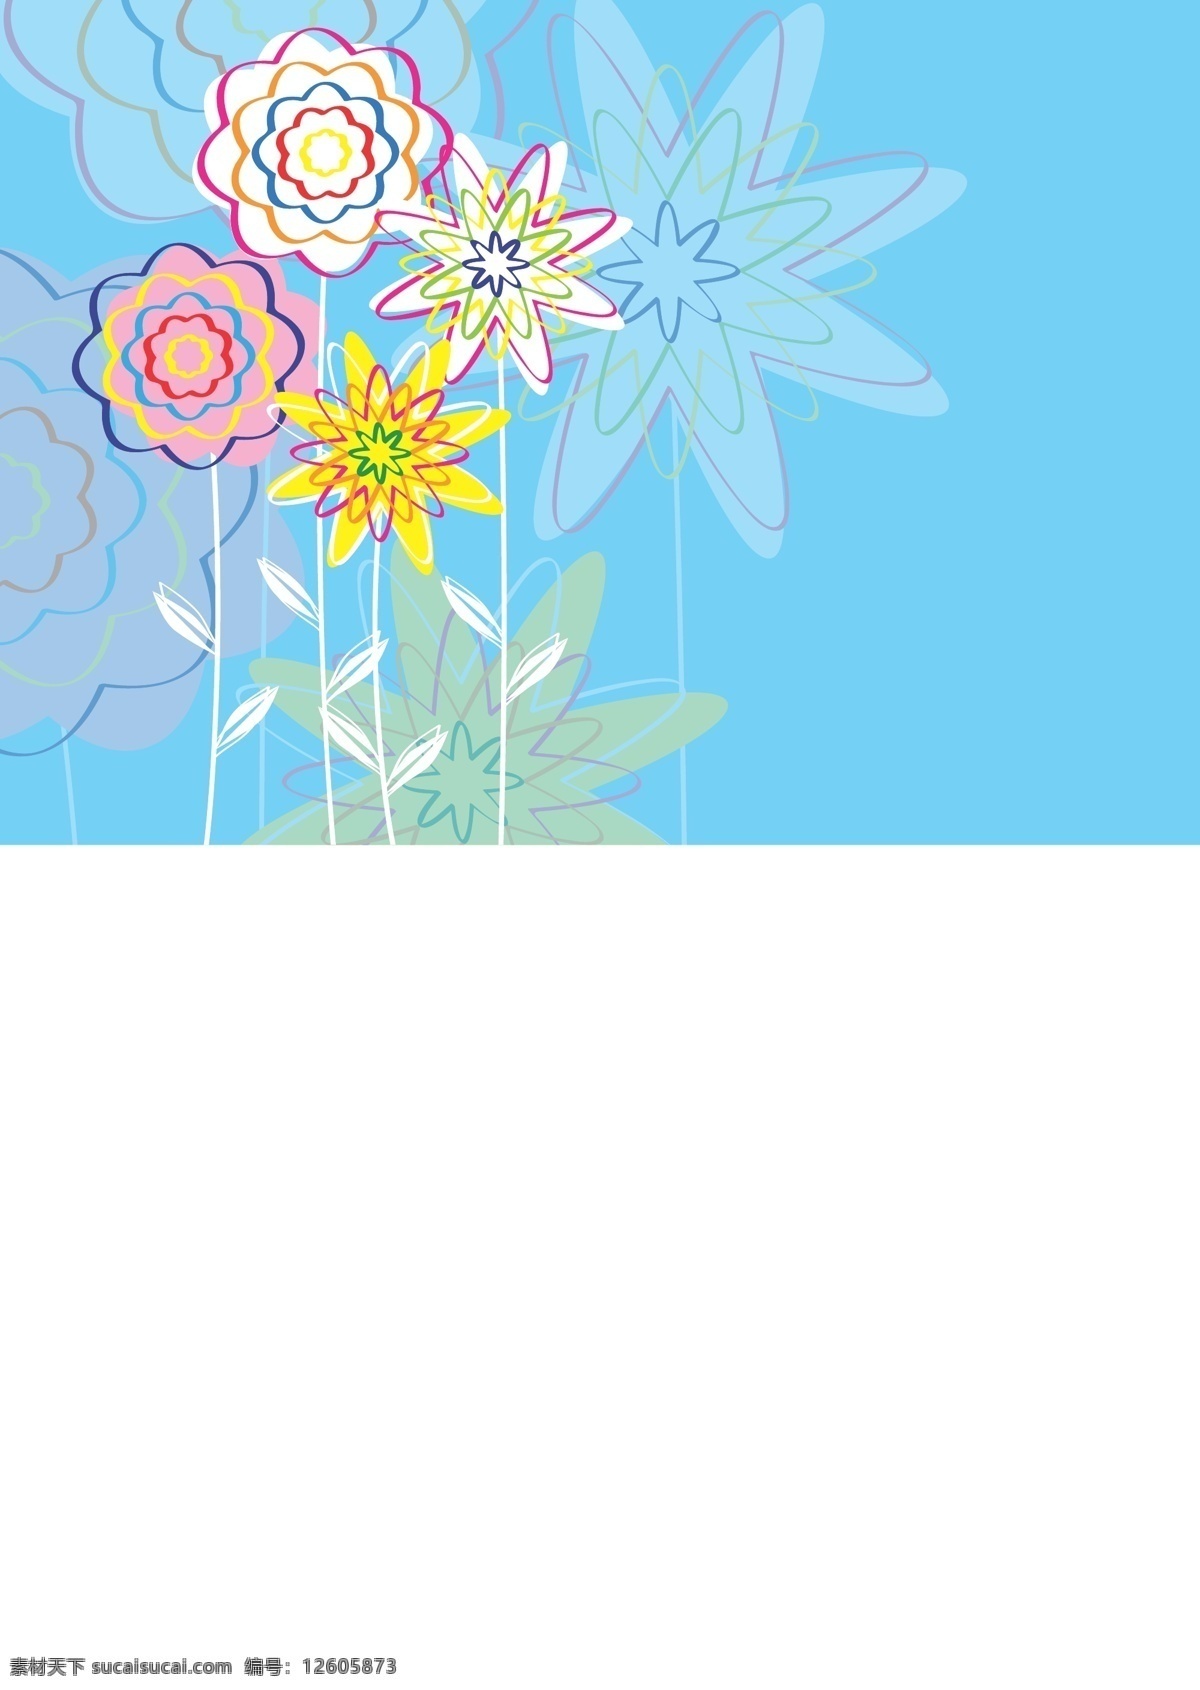 鲜花 线条 矢量图 花纹花朵矢量 矢量抽象花纹 缤纷多彩 多彩花边 潮流设计花纹 时尚优雅花朵 青色 天蓝色